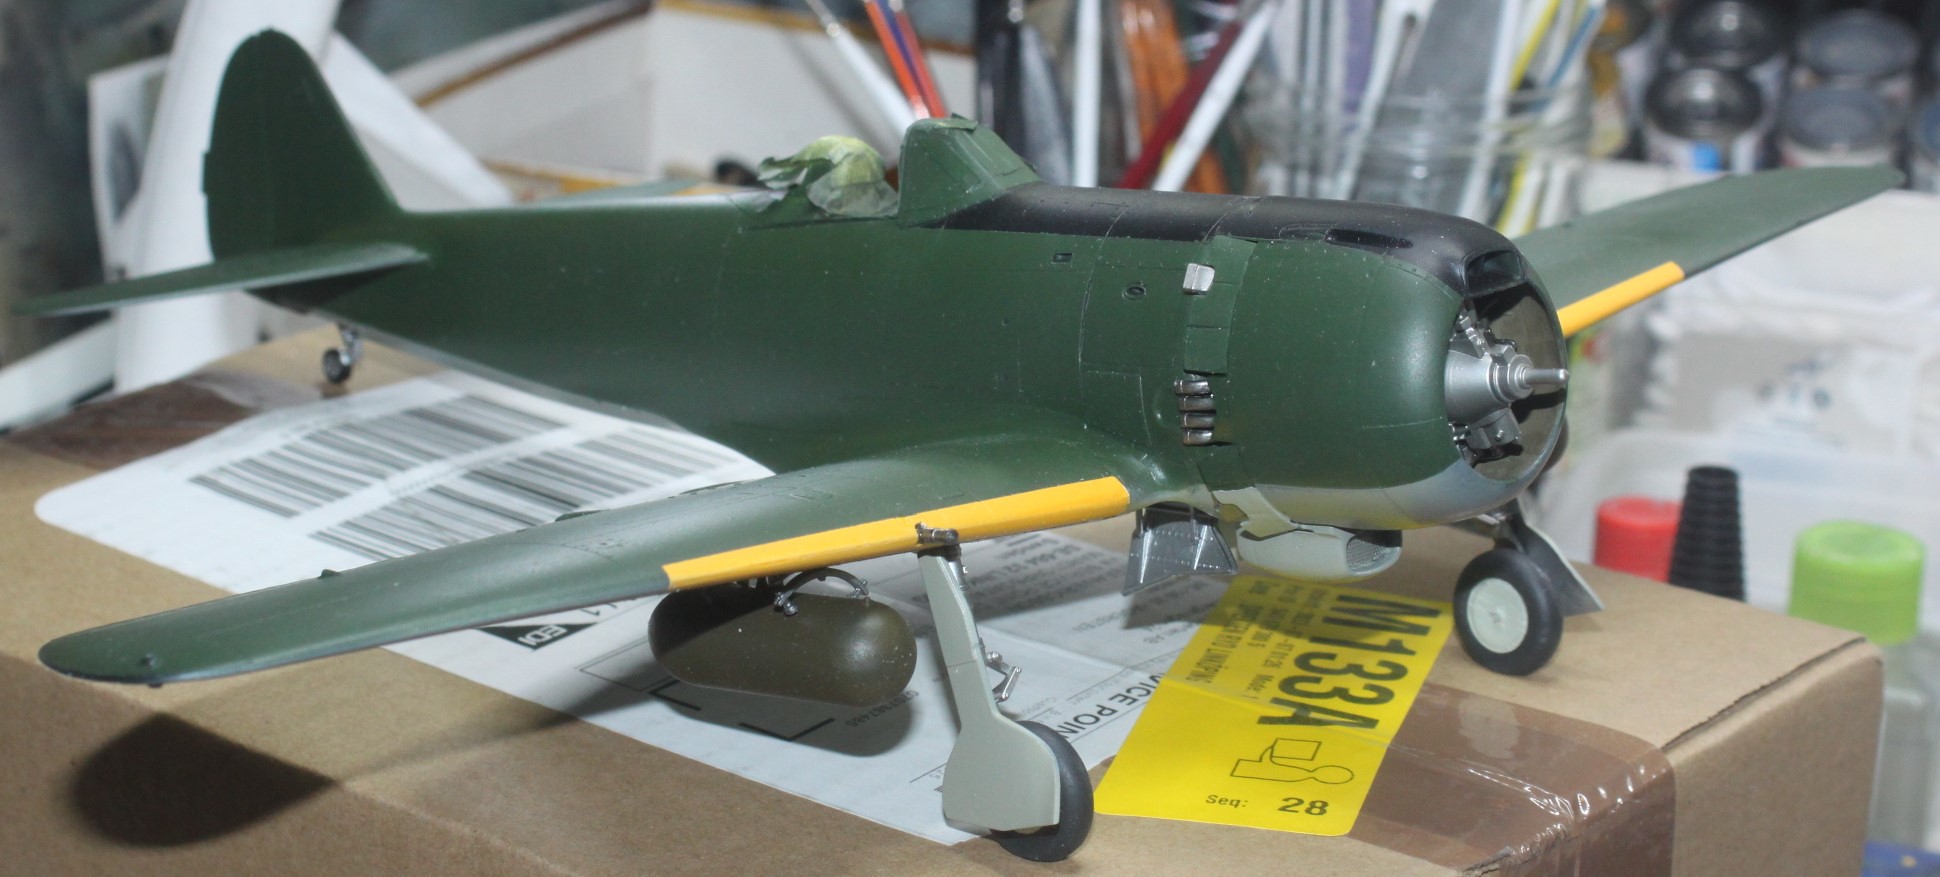 Nakajima Ki-84 Hayate (Frank), Hasegawa 1/32 - Sida 3 53509657802_0934e5fbab_k